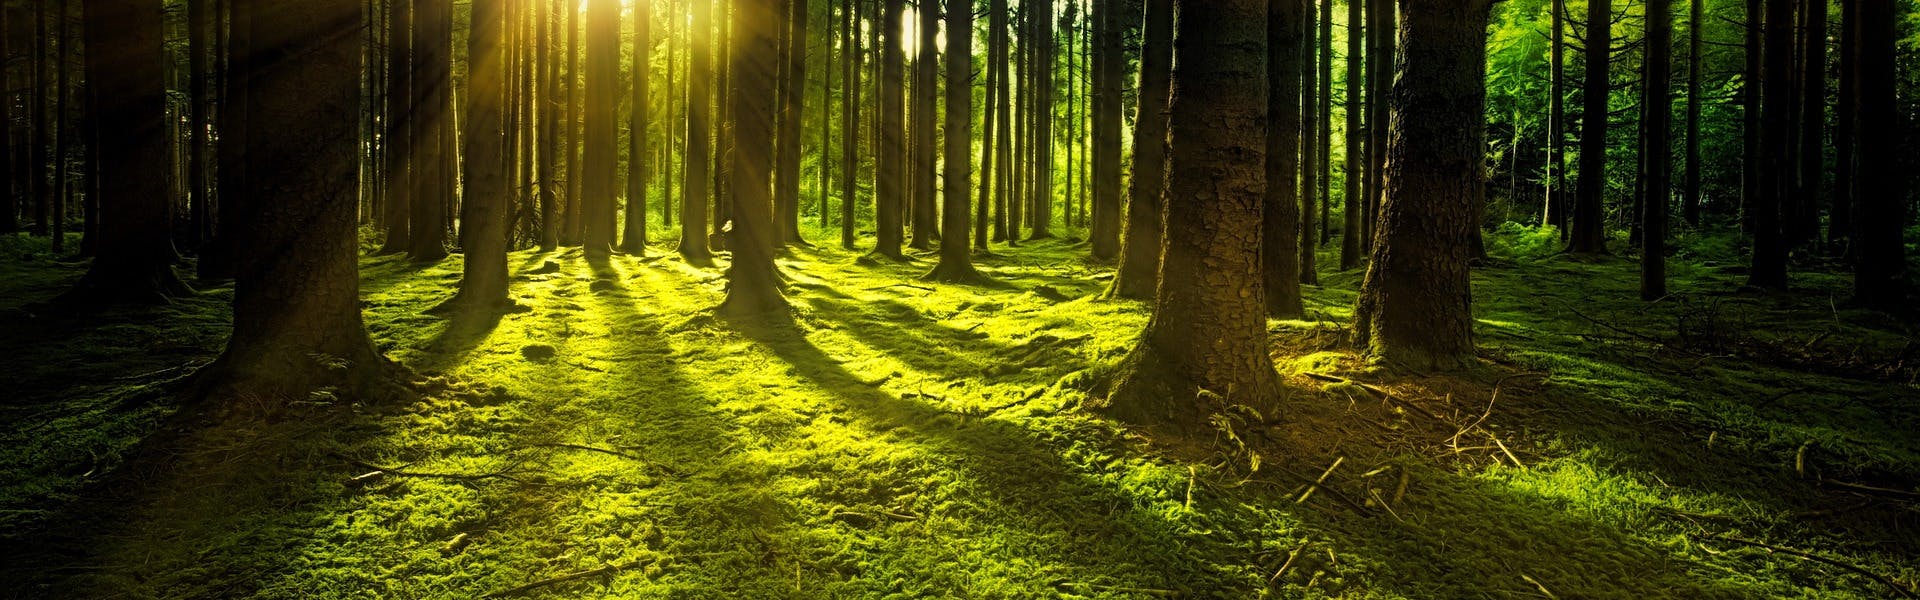 Bild Wald mit Sonne 